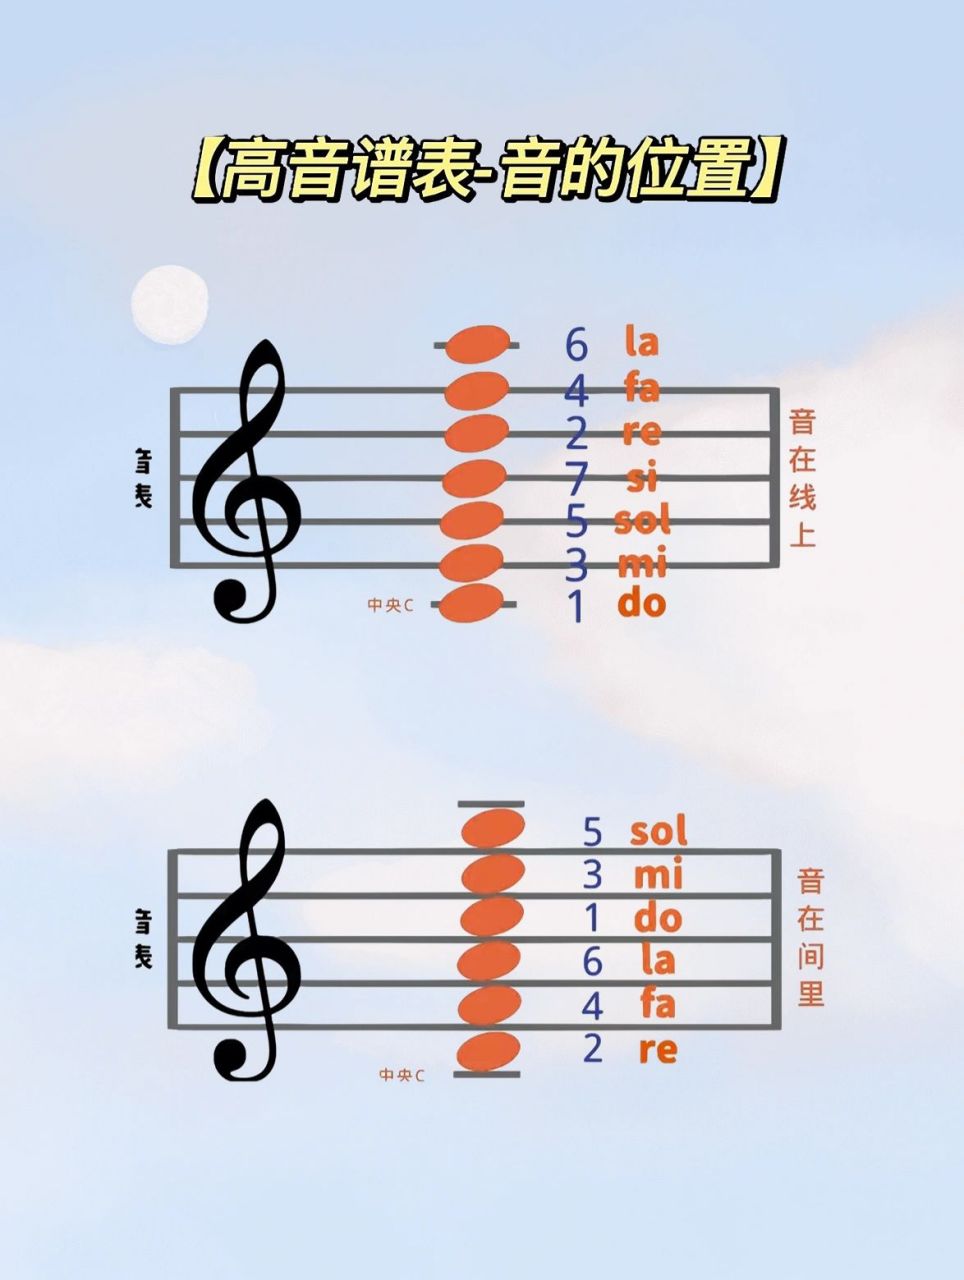 【钢琴乐理】高低音谱表位置图 高低音谱表,音的位置看这里一目了然